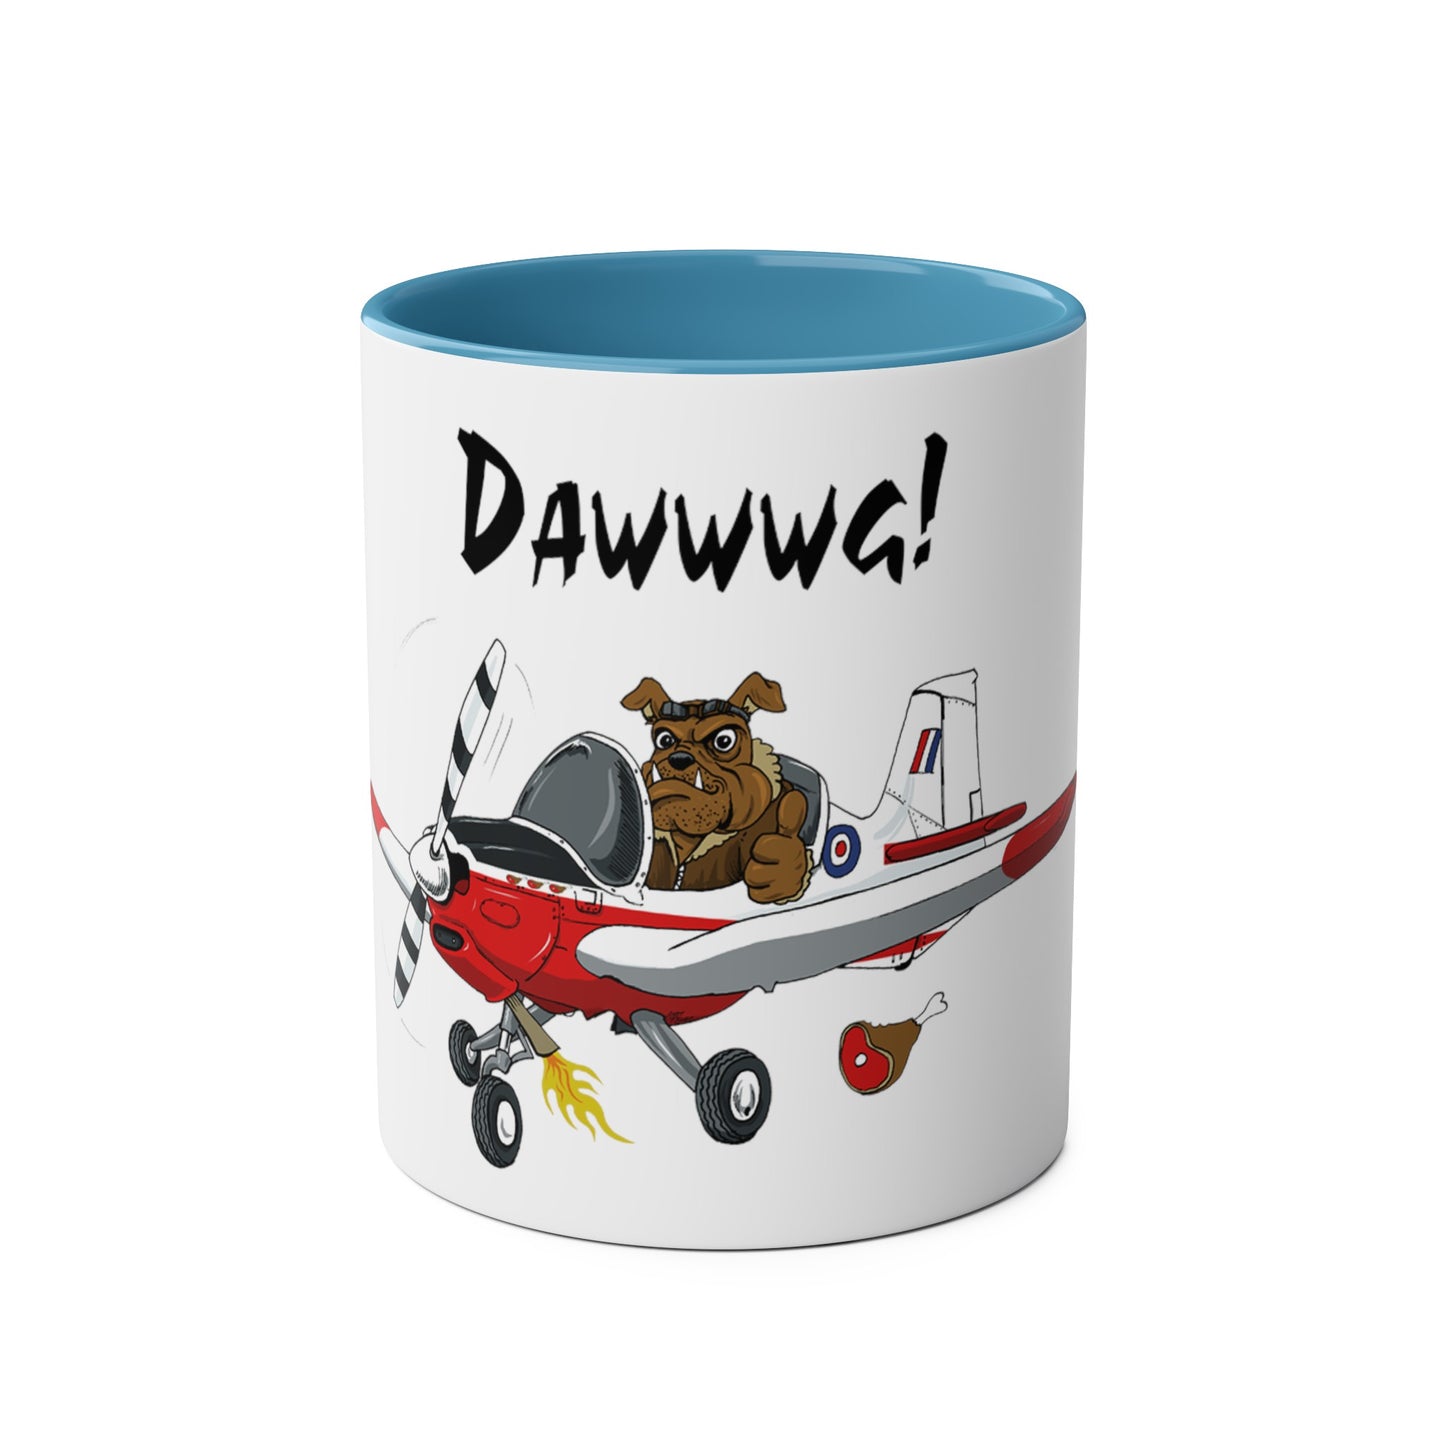 Bulldog Aerobatic Trainer Two-Tone Coffee Mugs, 11oz